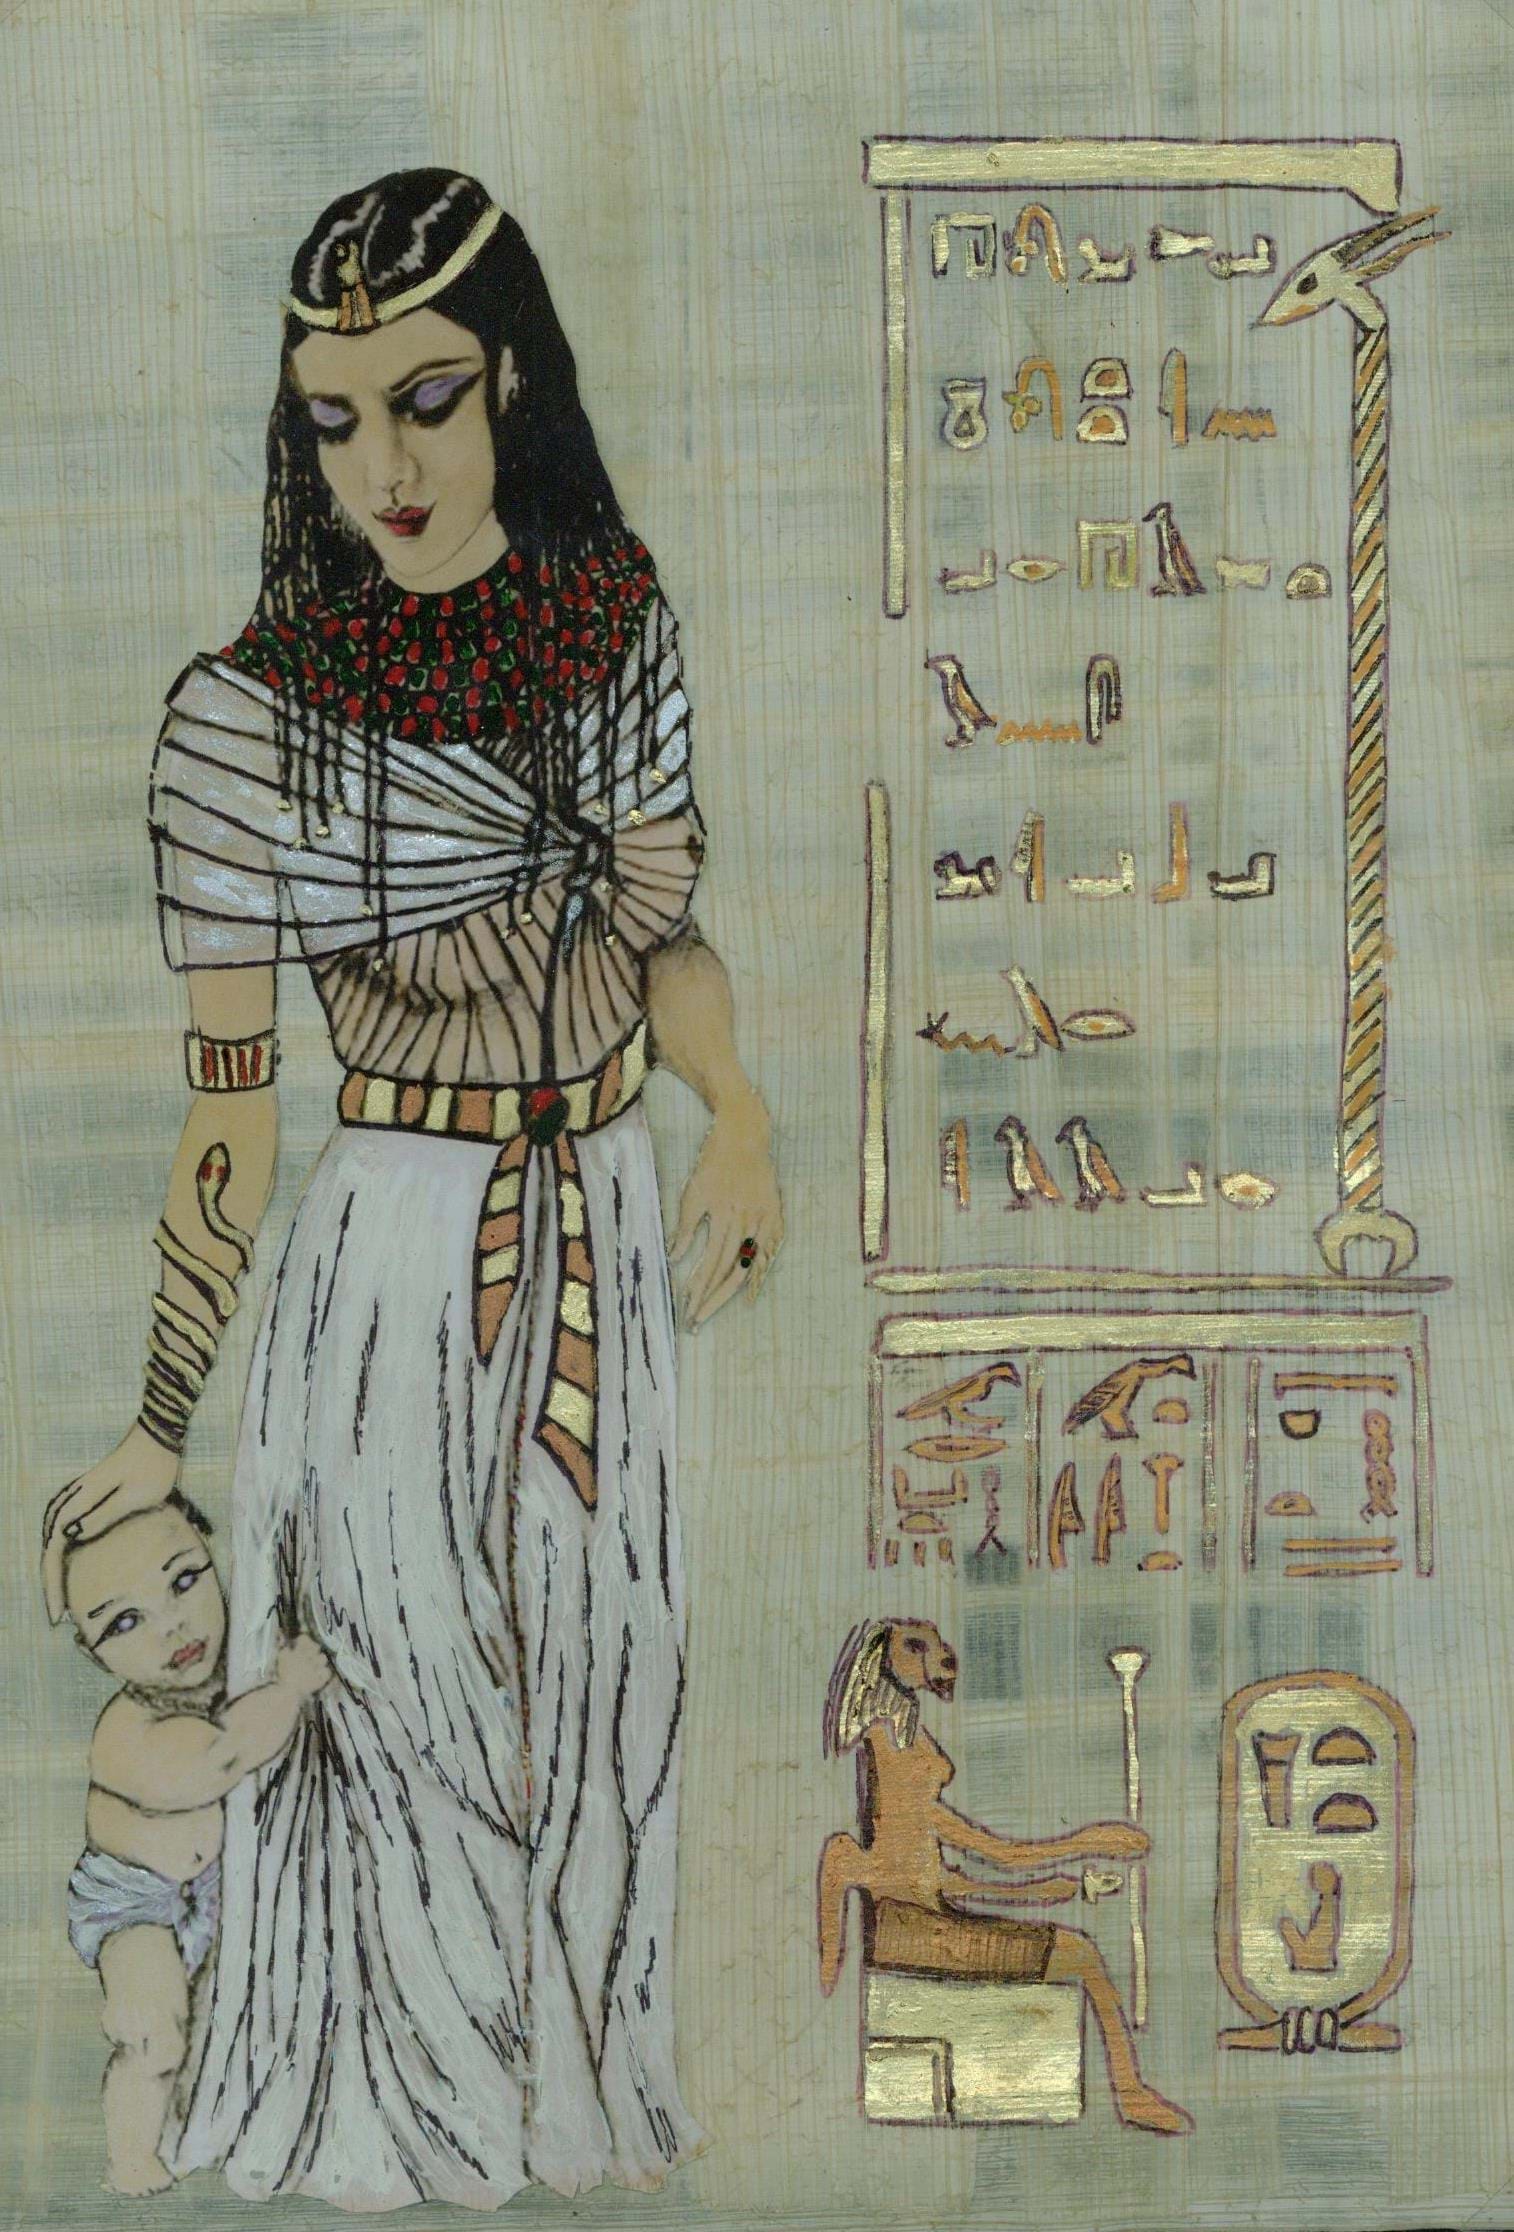 Chrigel's Art 4 You - Papyrusbild: "Bastet mit Kind"